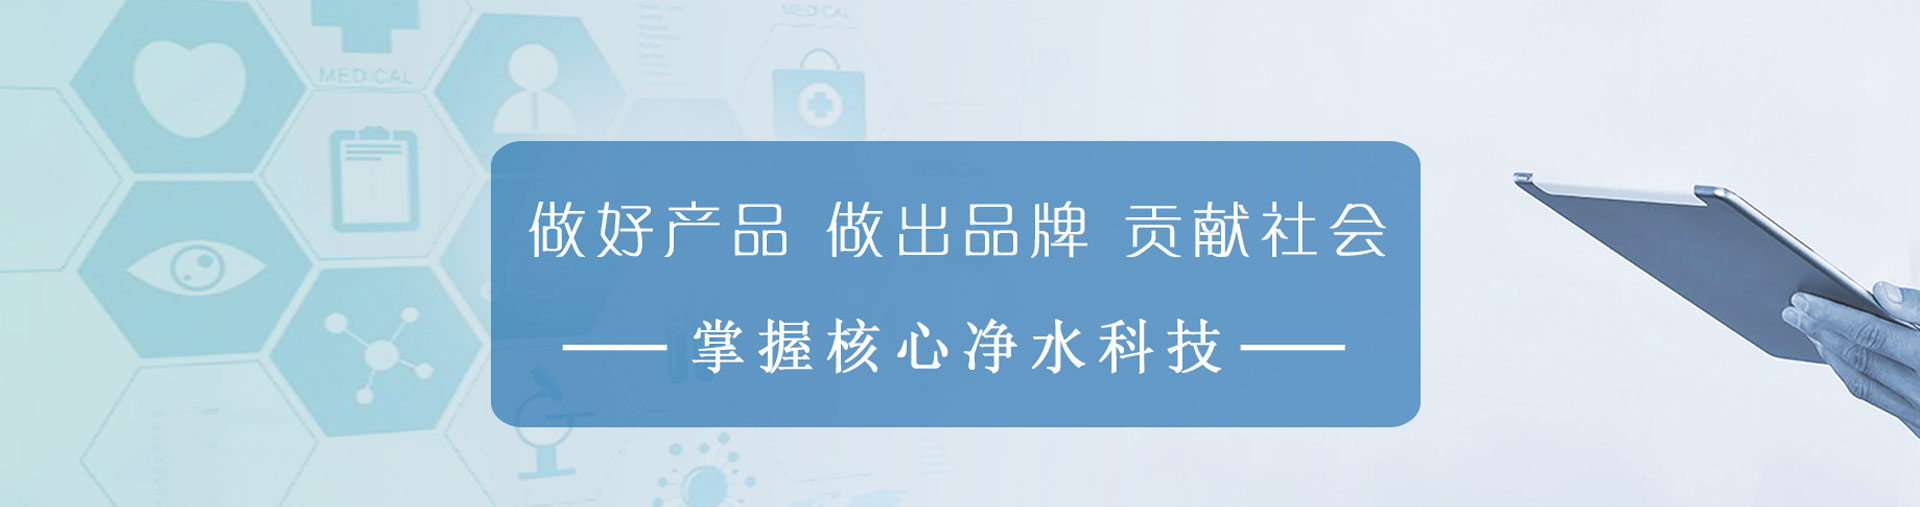 龙8-long8(中国)唯一官方网站_产品1225